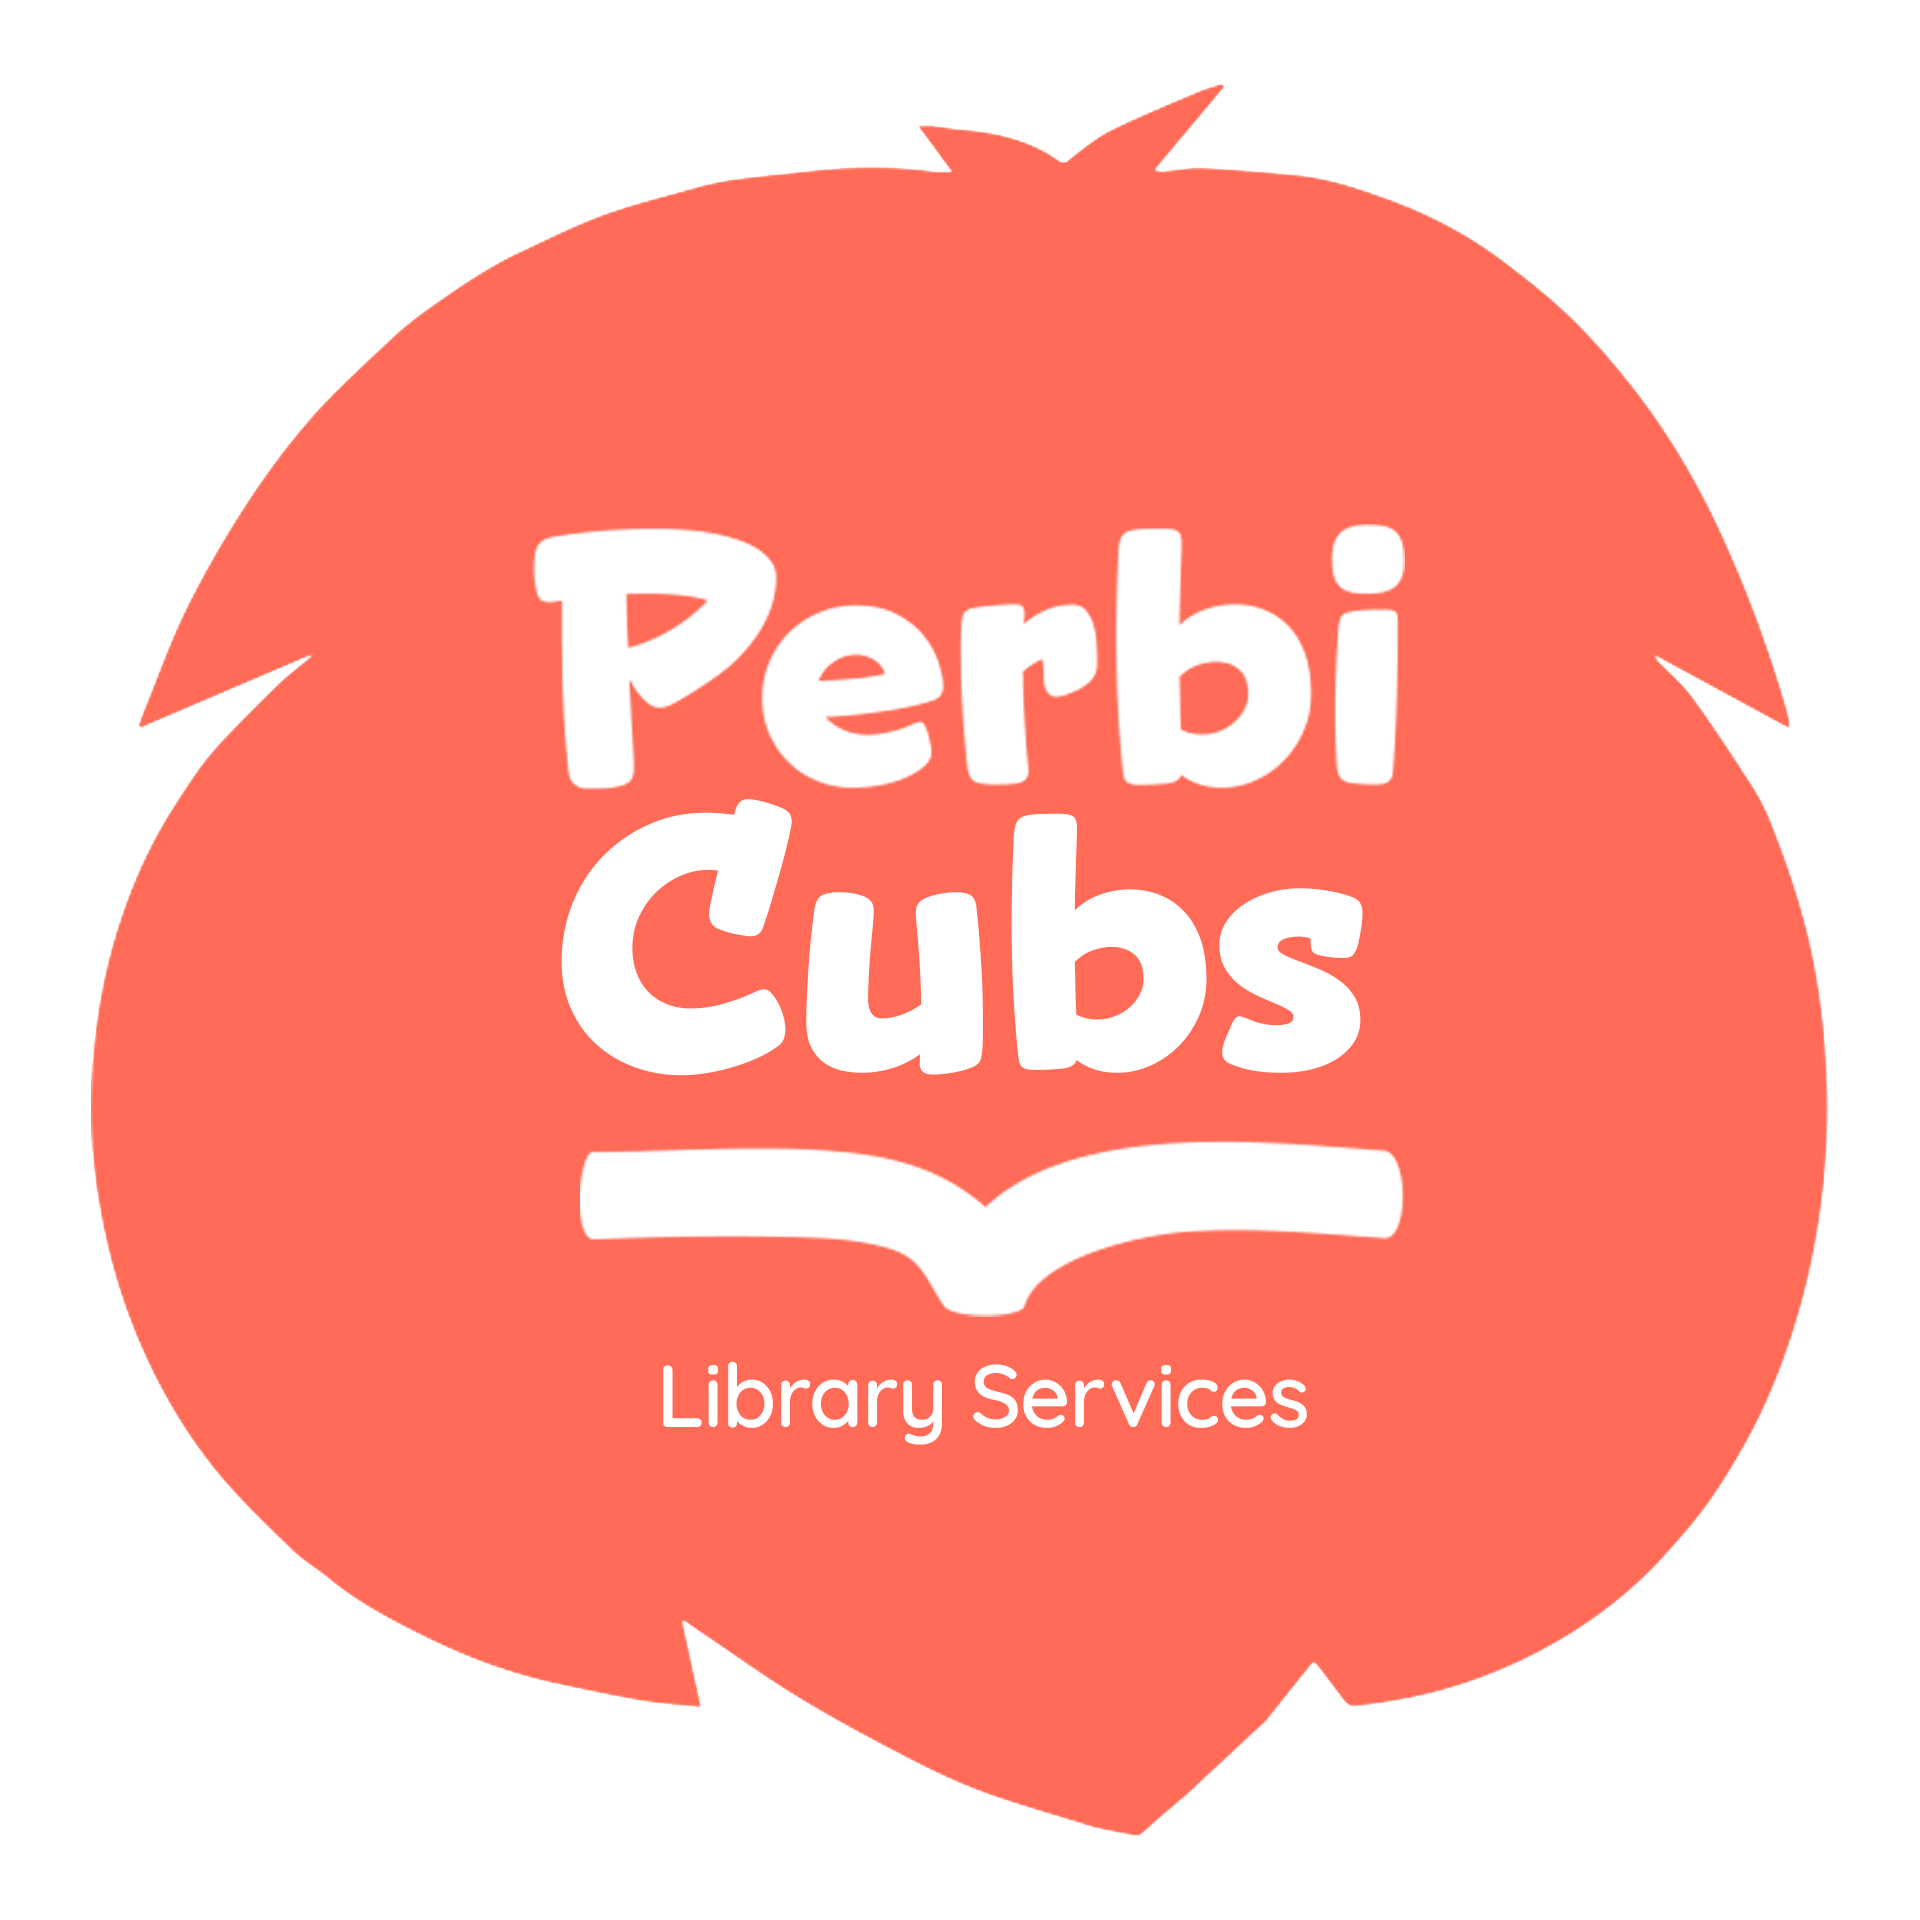 Perbi Cubs